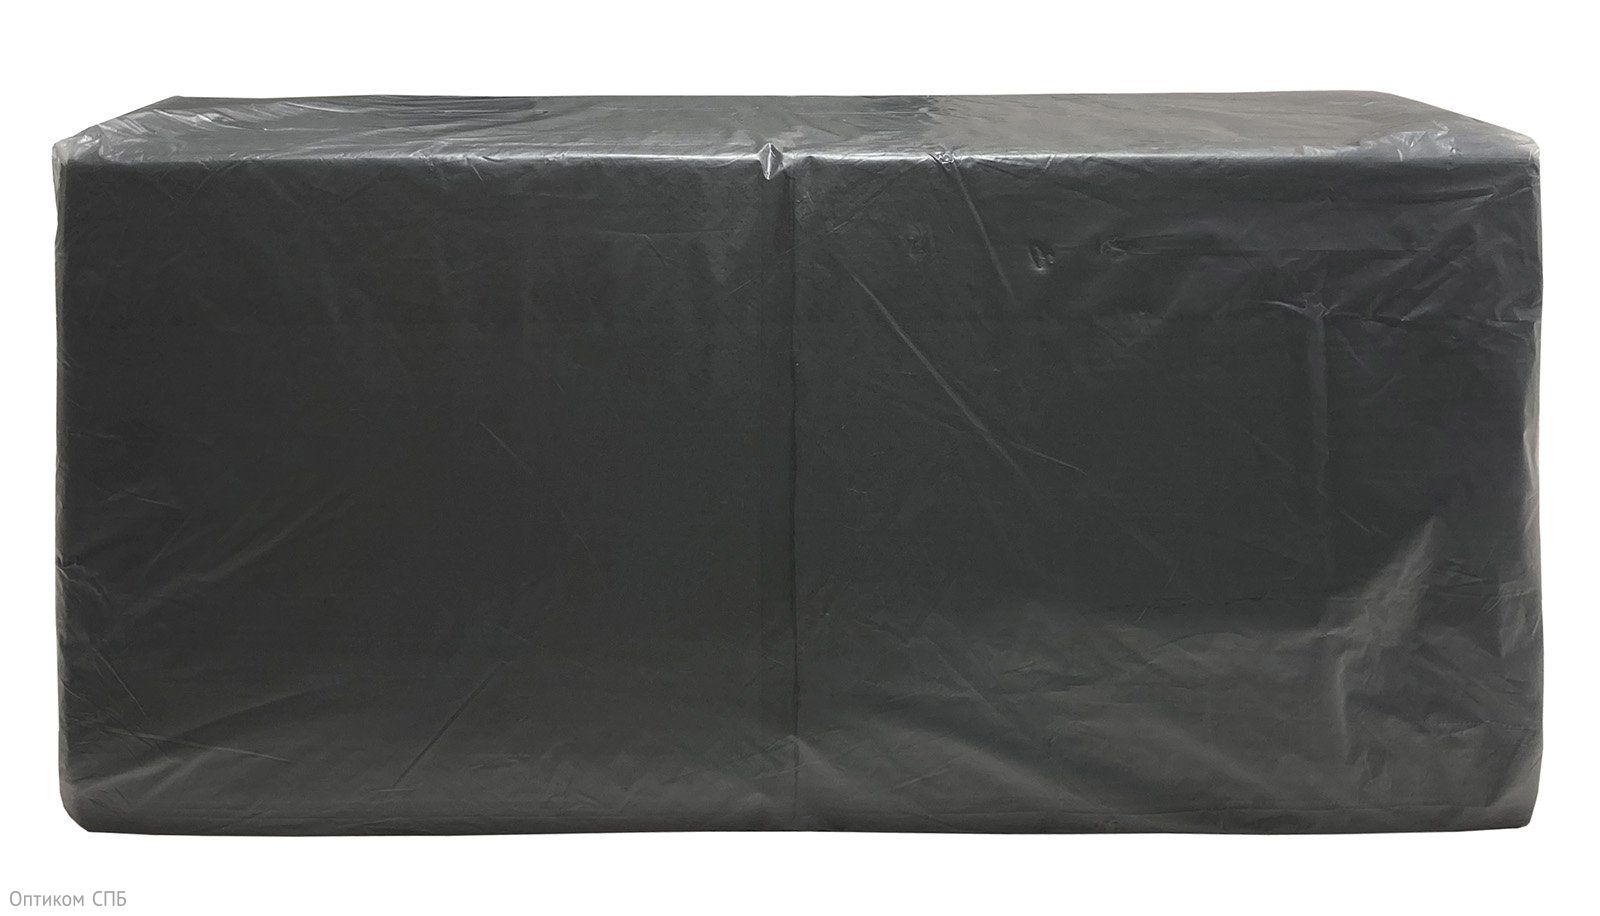 Салфетки бумажные двухслойные используются для сервировки стола и личной гигиены. Представлены в черном цвете. Размер 33 х 33 см. В упаковке 200 листов. В транспортной упаковке 8 штук.